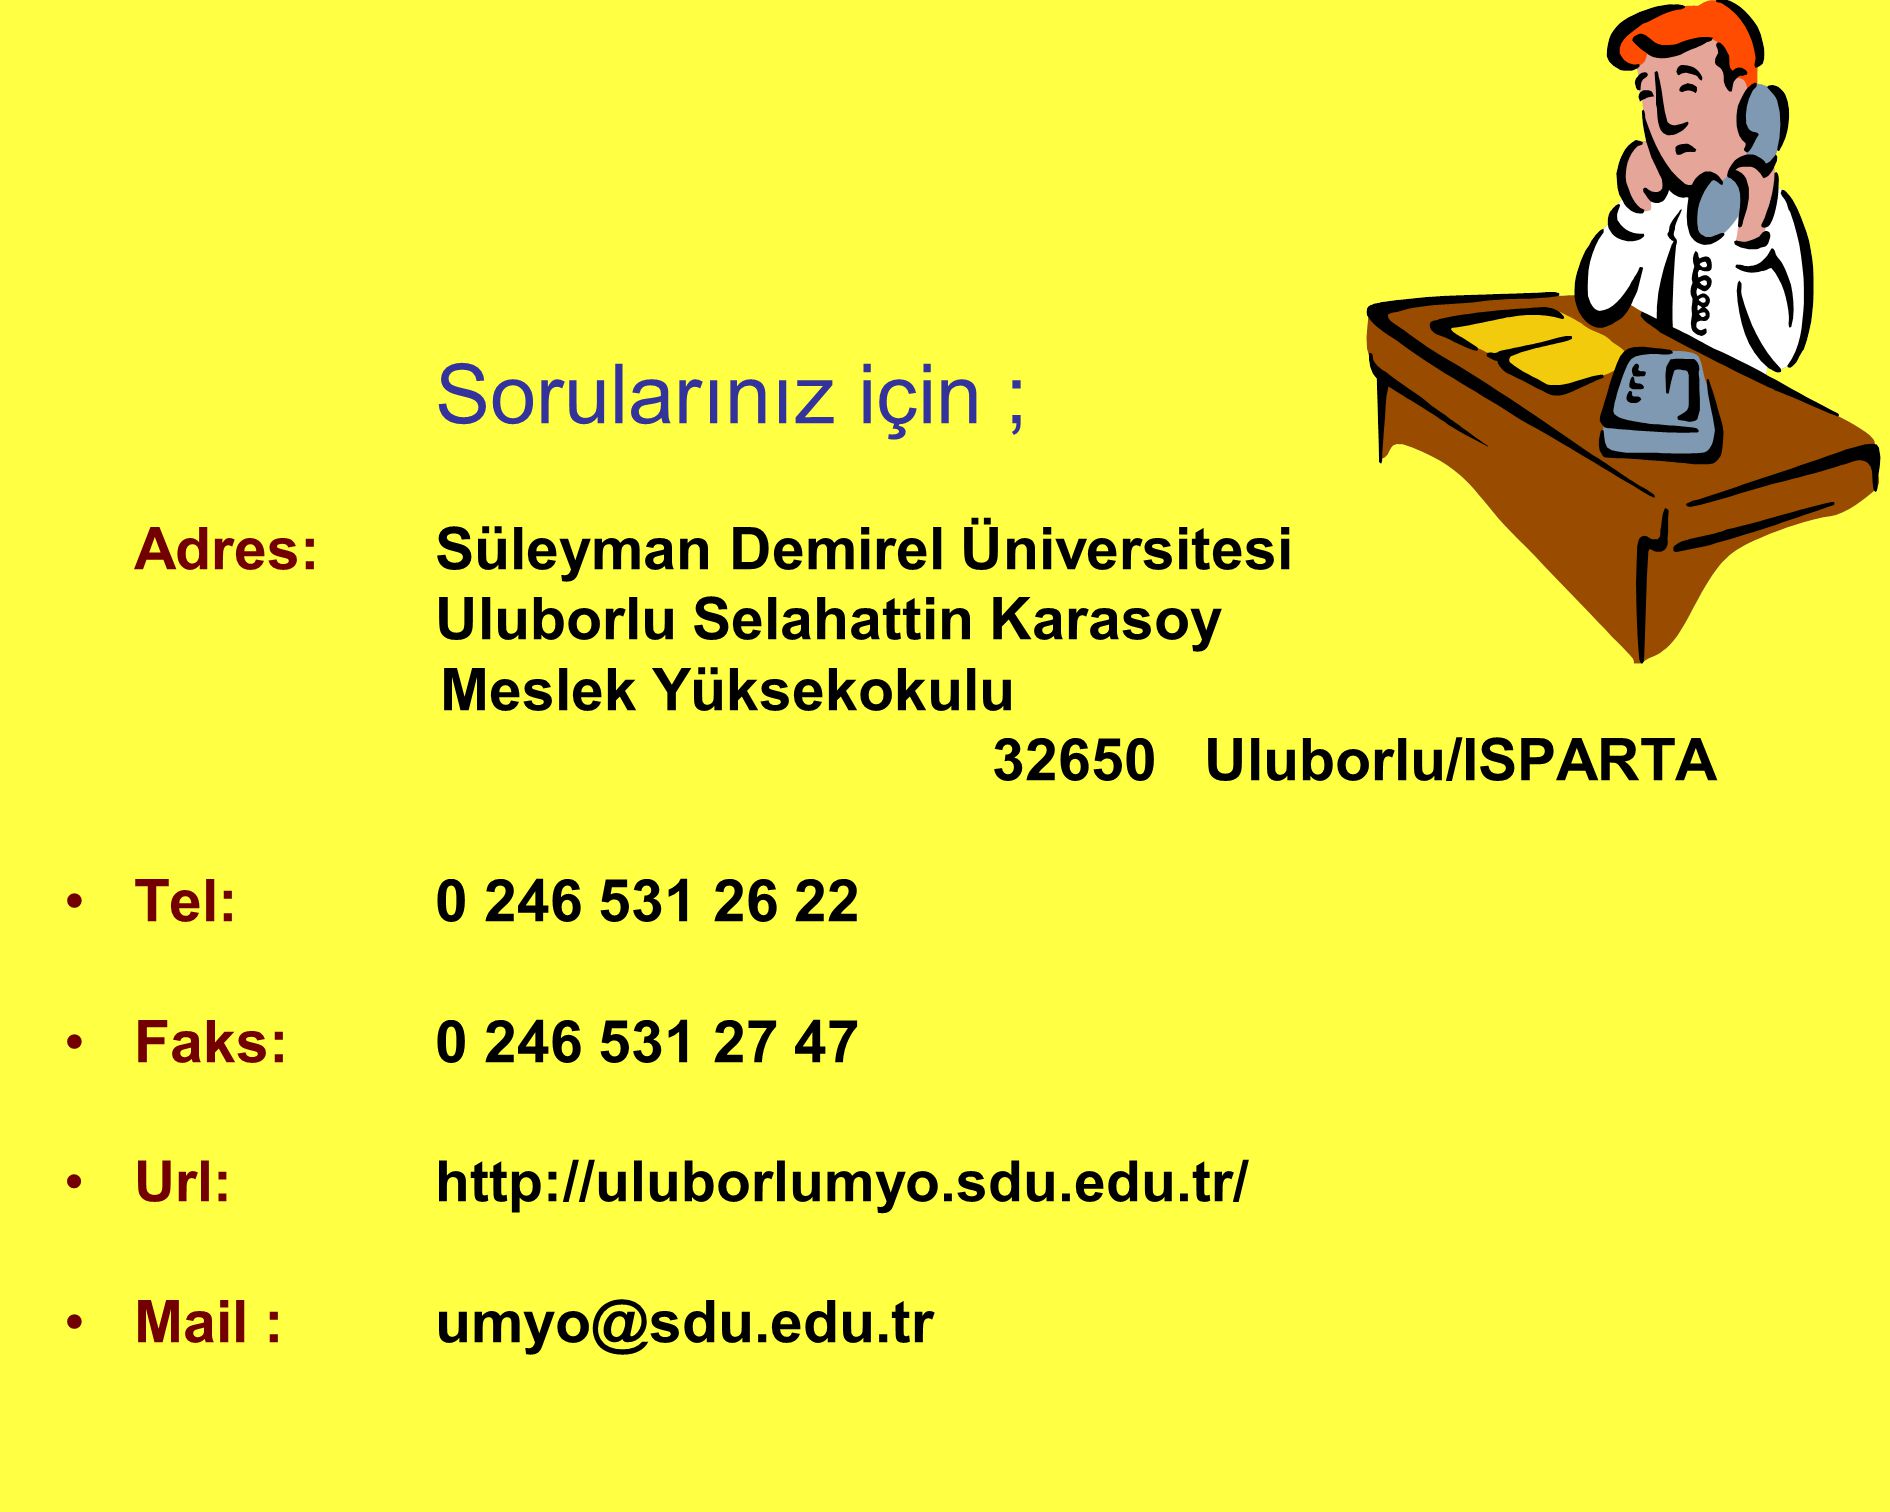 Sorularınız için ; Adres: Süleyman Demirel Üniversitesi